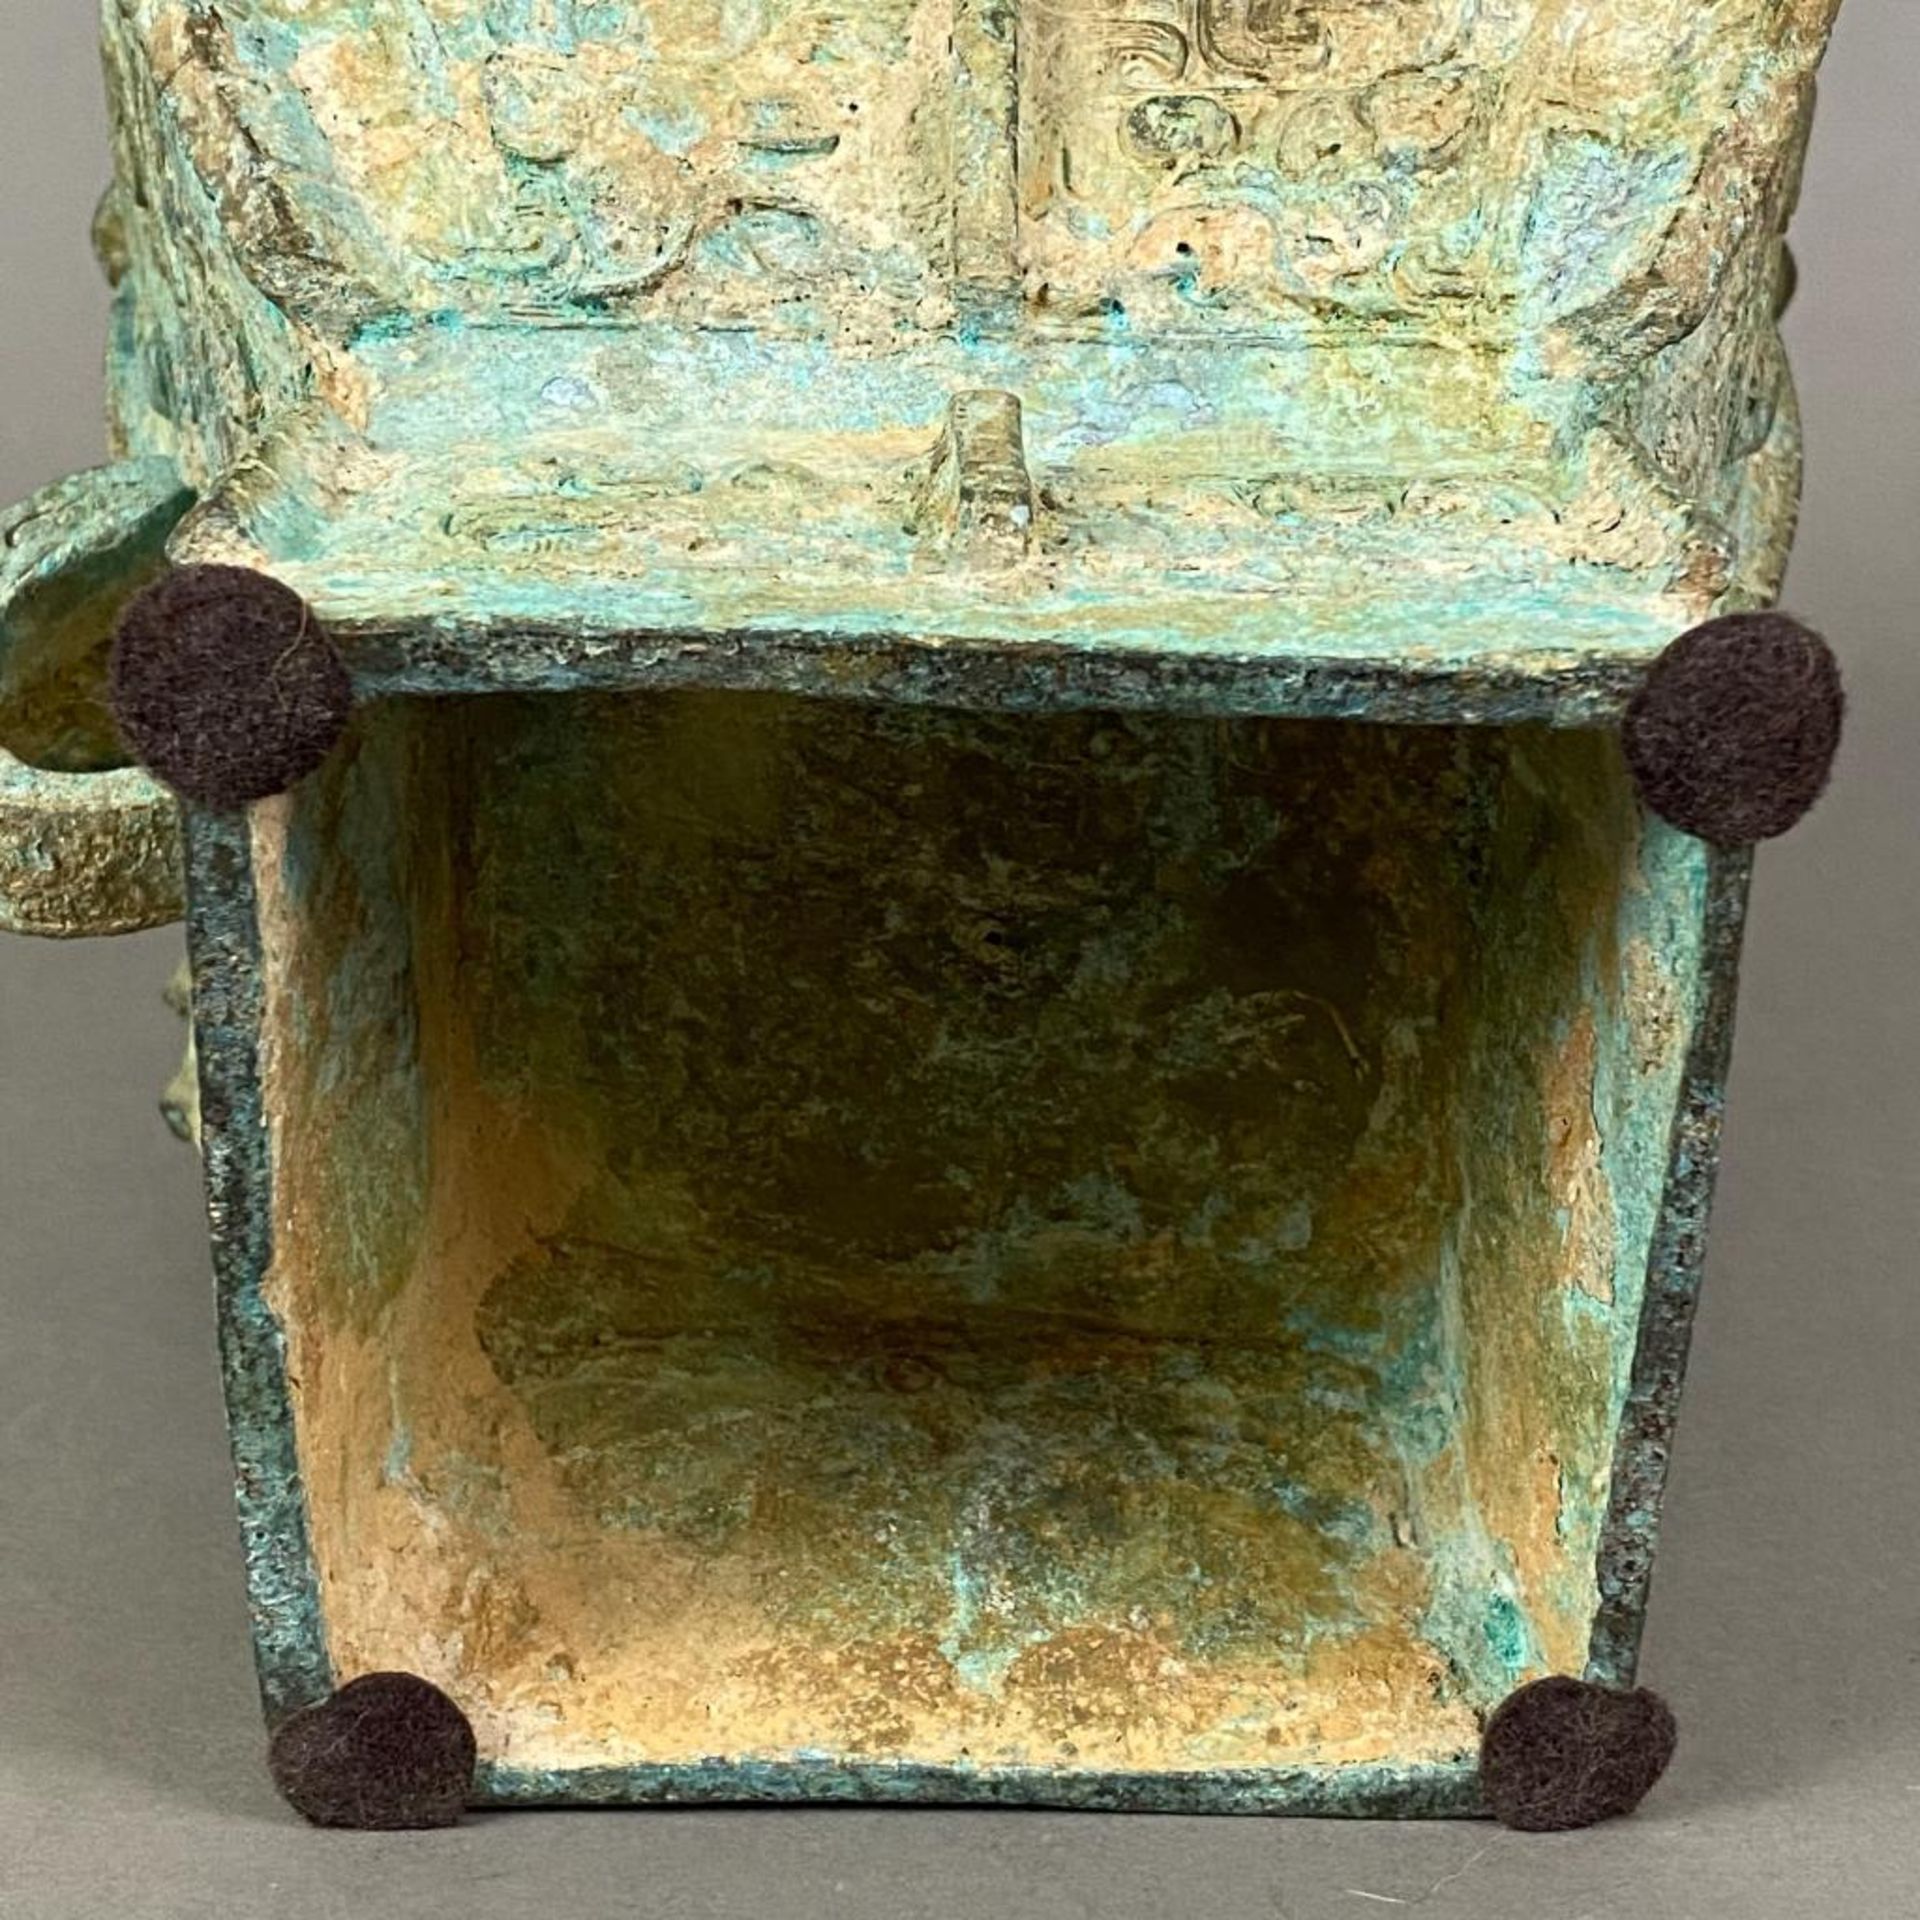 Fanghu-Vase im archaischen Stil - China, grün-braun patinierte Bronze, vierkantige gebauchte Form a - Bild 10 aus 10